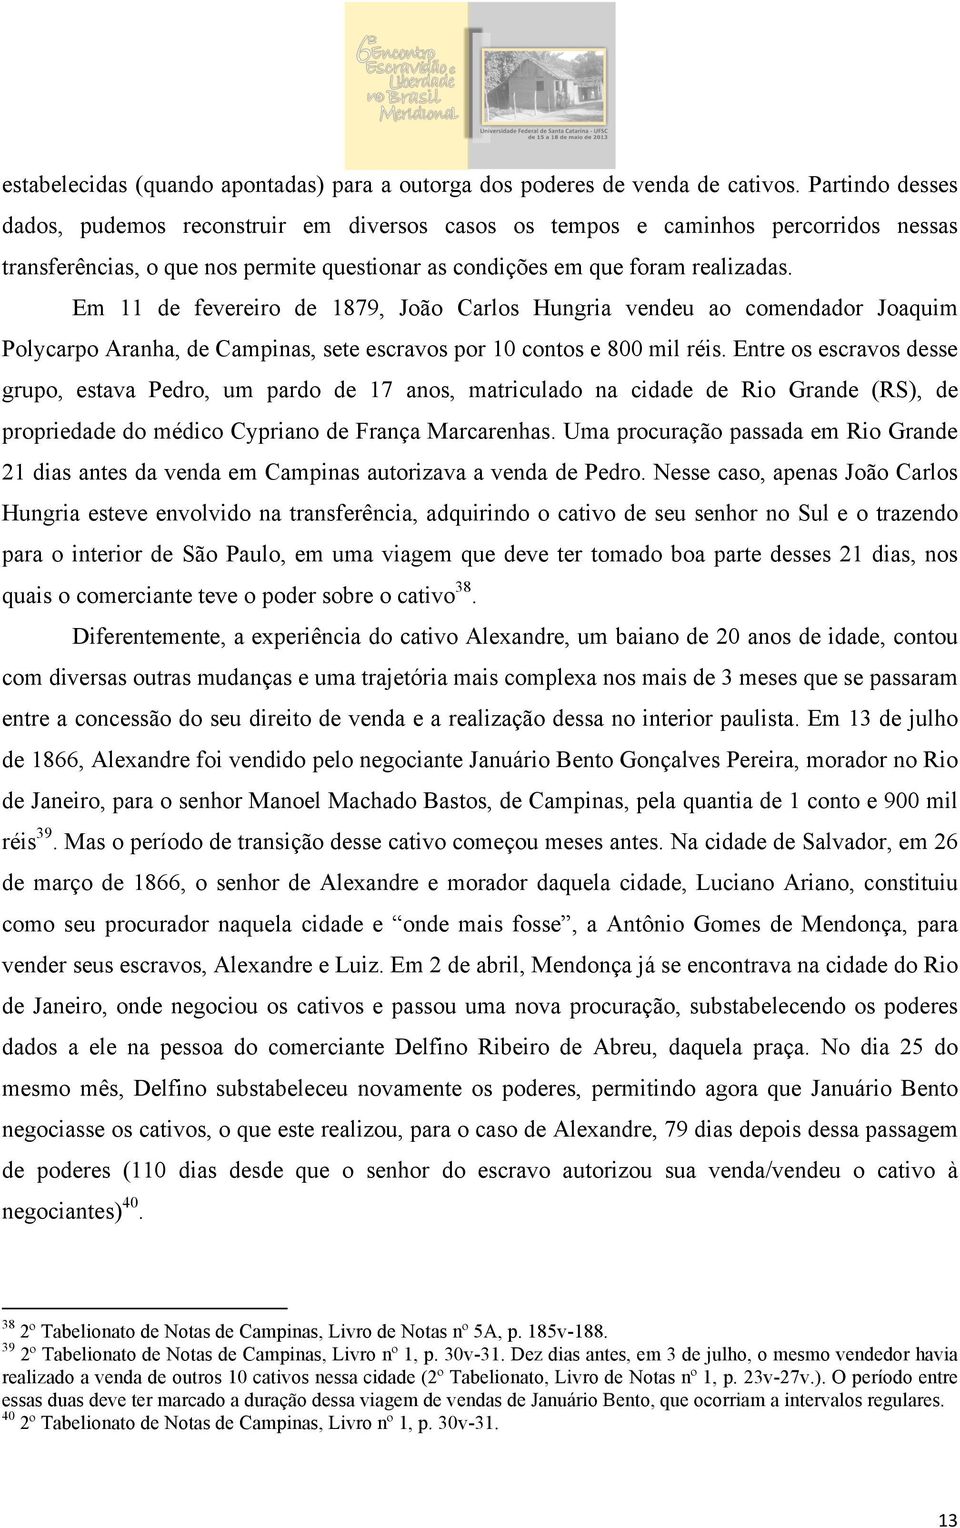 Em 11 de fevereiro de 1879, João Carlos Hungria vendeu ao comendador Joaquim Polycarpo Aranha, de Campinas, sete escravos por 10 contos e 800 mil réis.